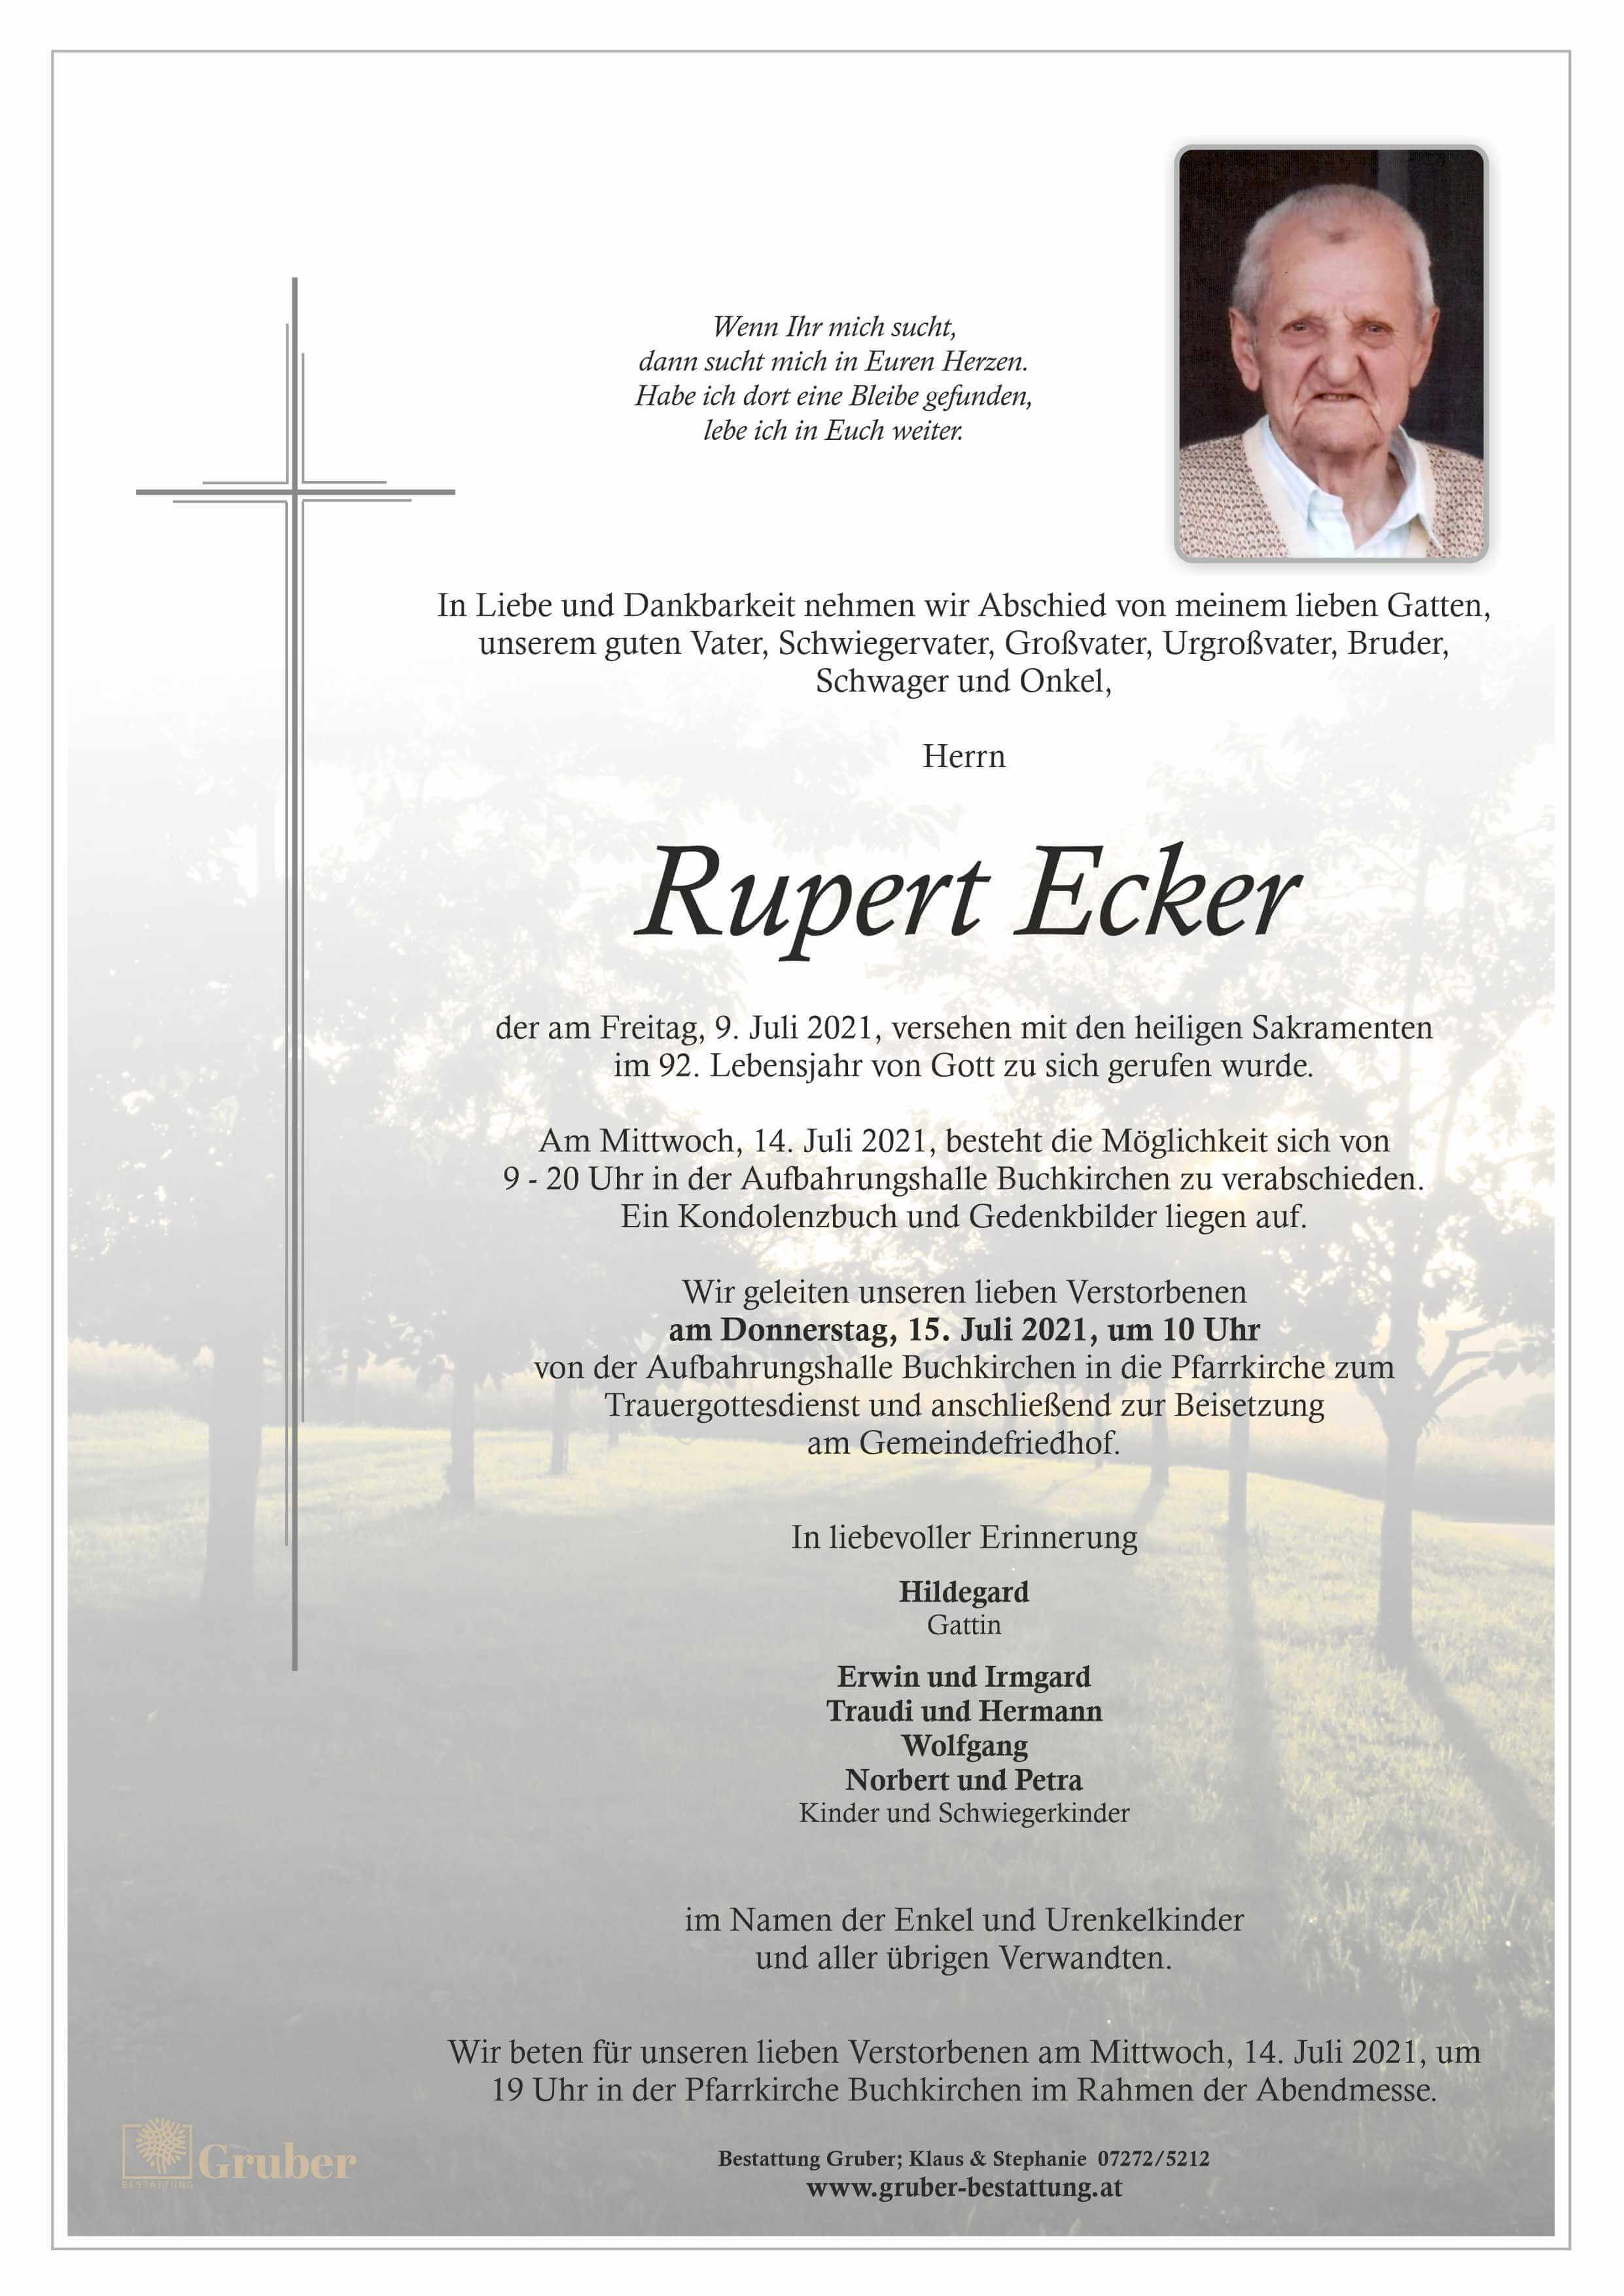 Rupert Ecker (Buchkirchen)